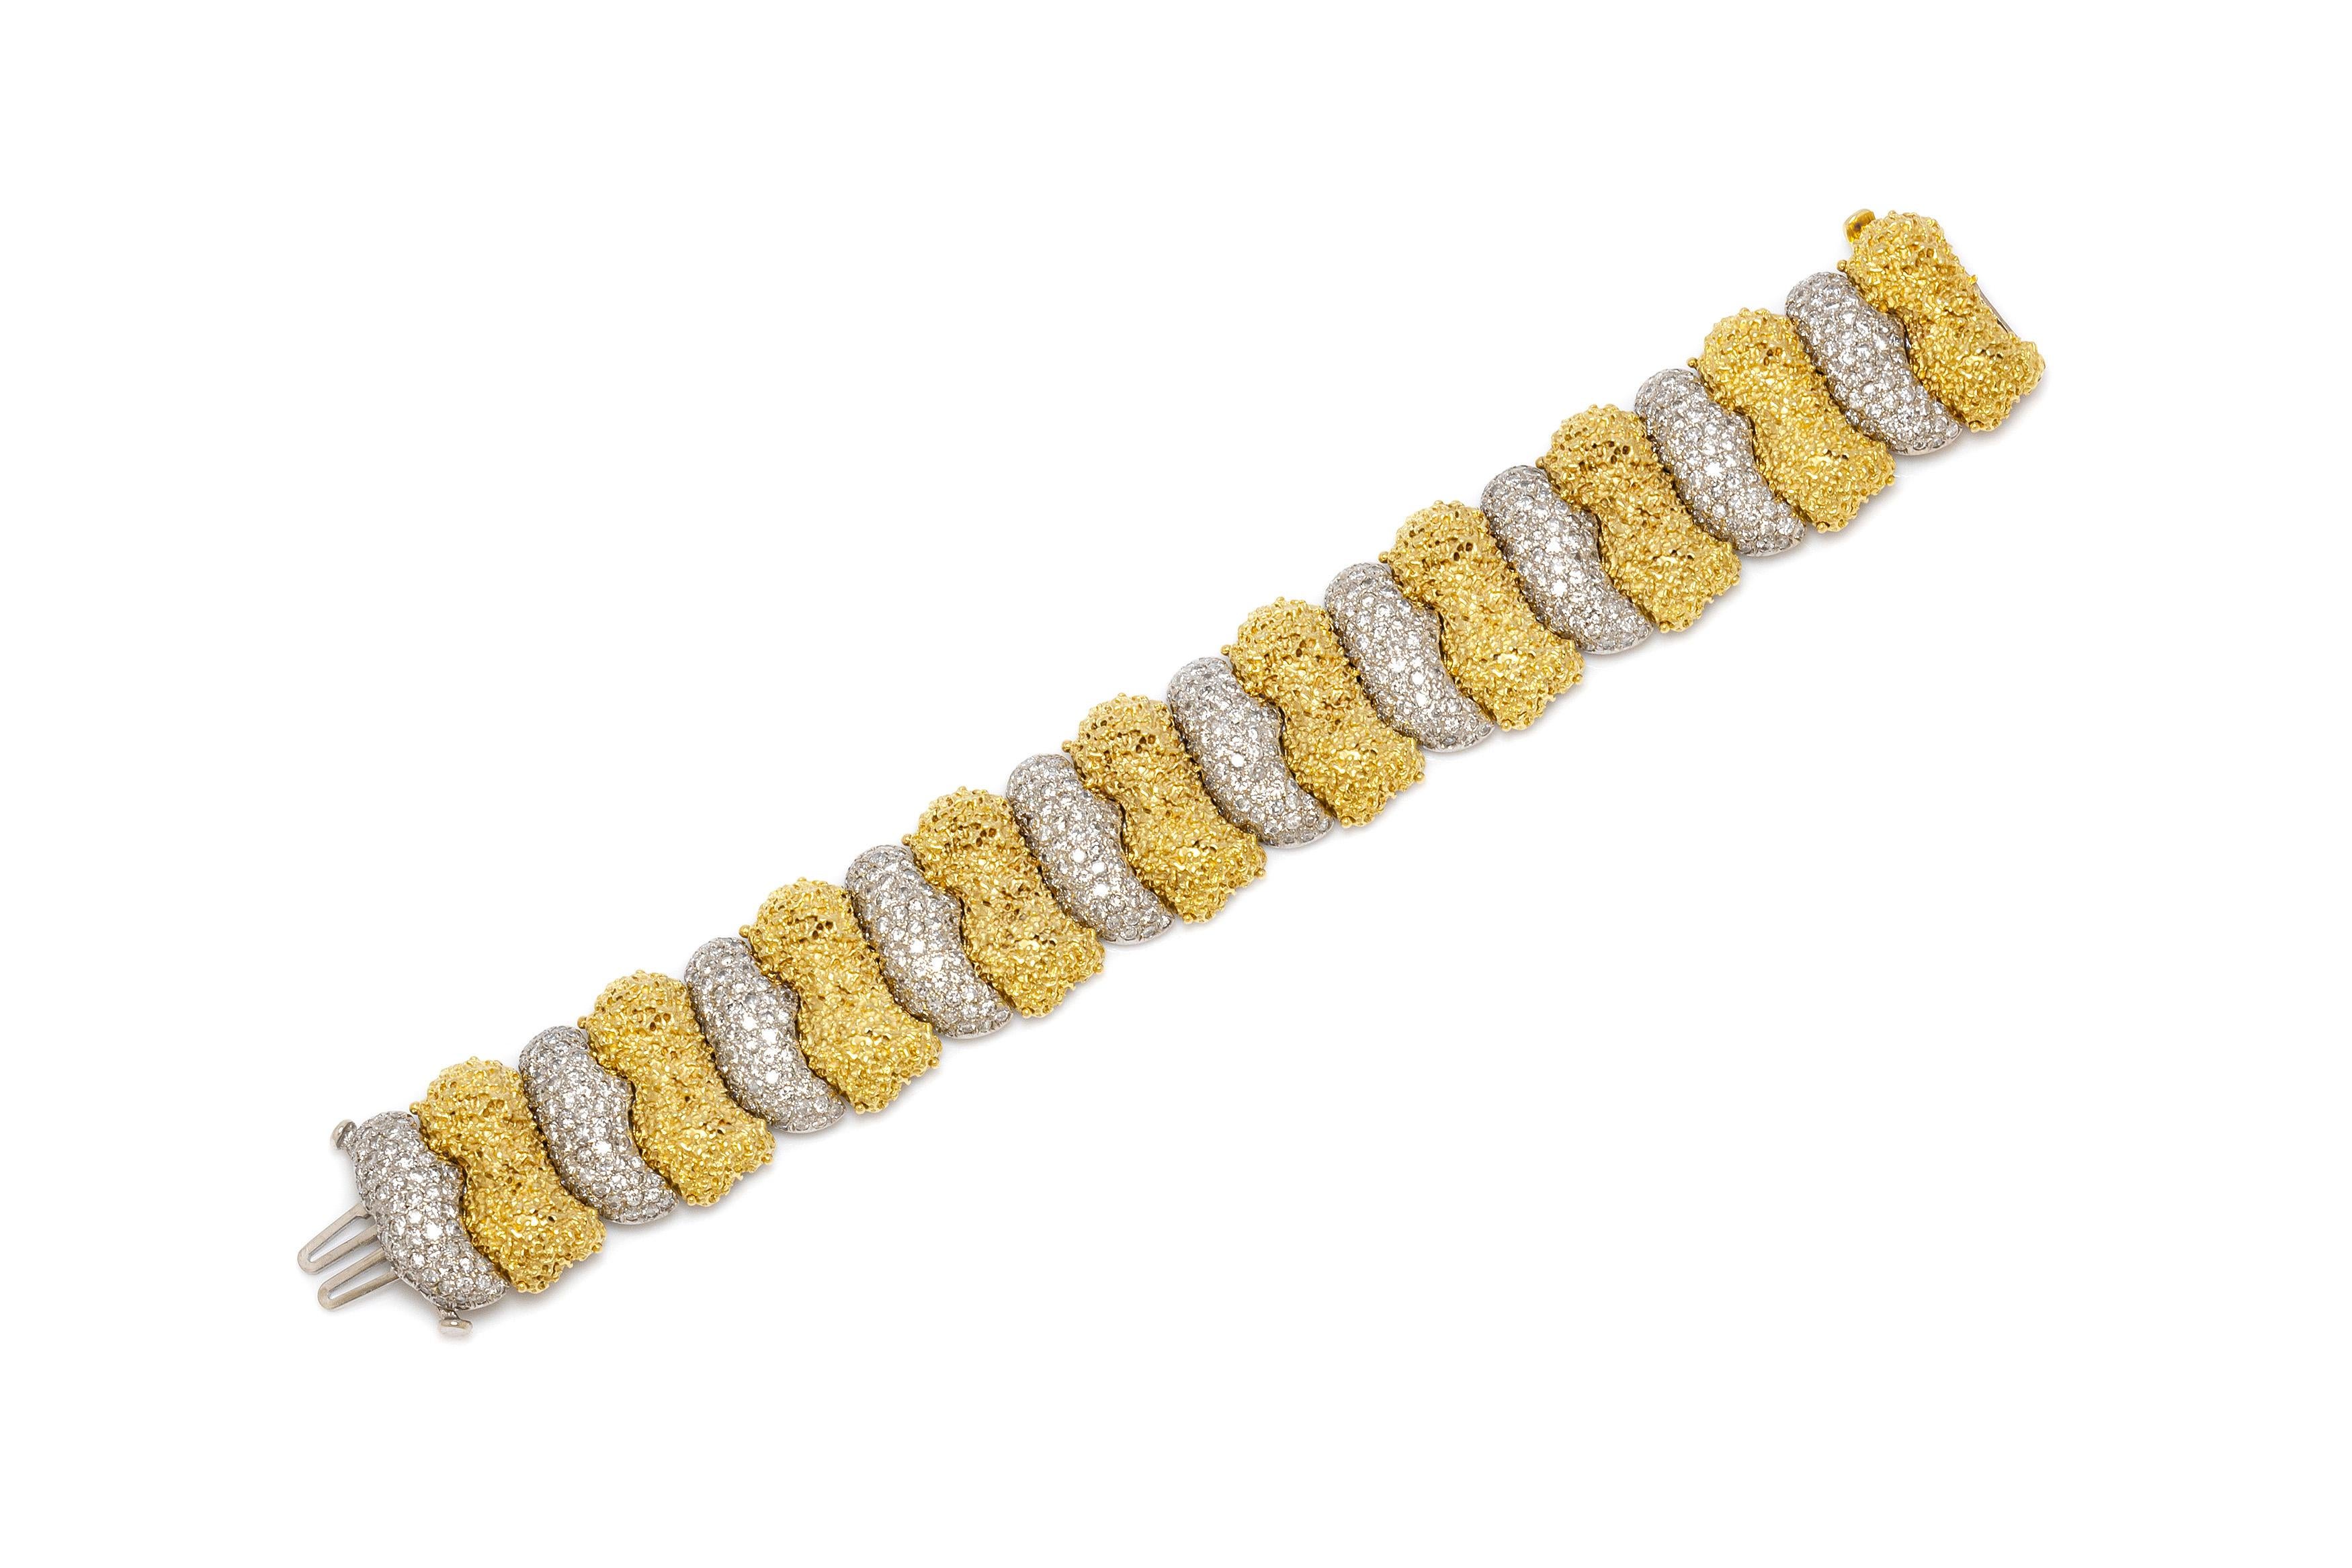 Armband aus 18 Karat Gelb- und Weißgold mit Diamanten mit einem Gesamtgewicht von 15,00 Karat. Die Länge des Armbands beträgt 7,5 Zoll / 19 cm. Ca. 1970er Jahre.